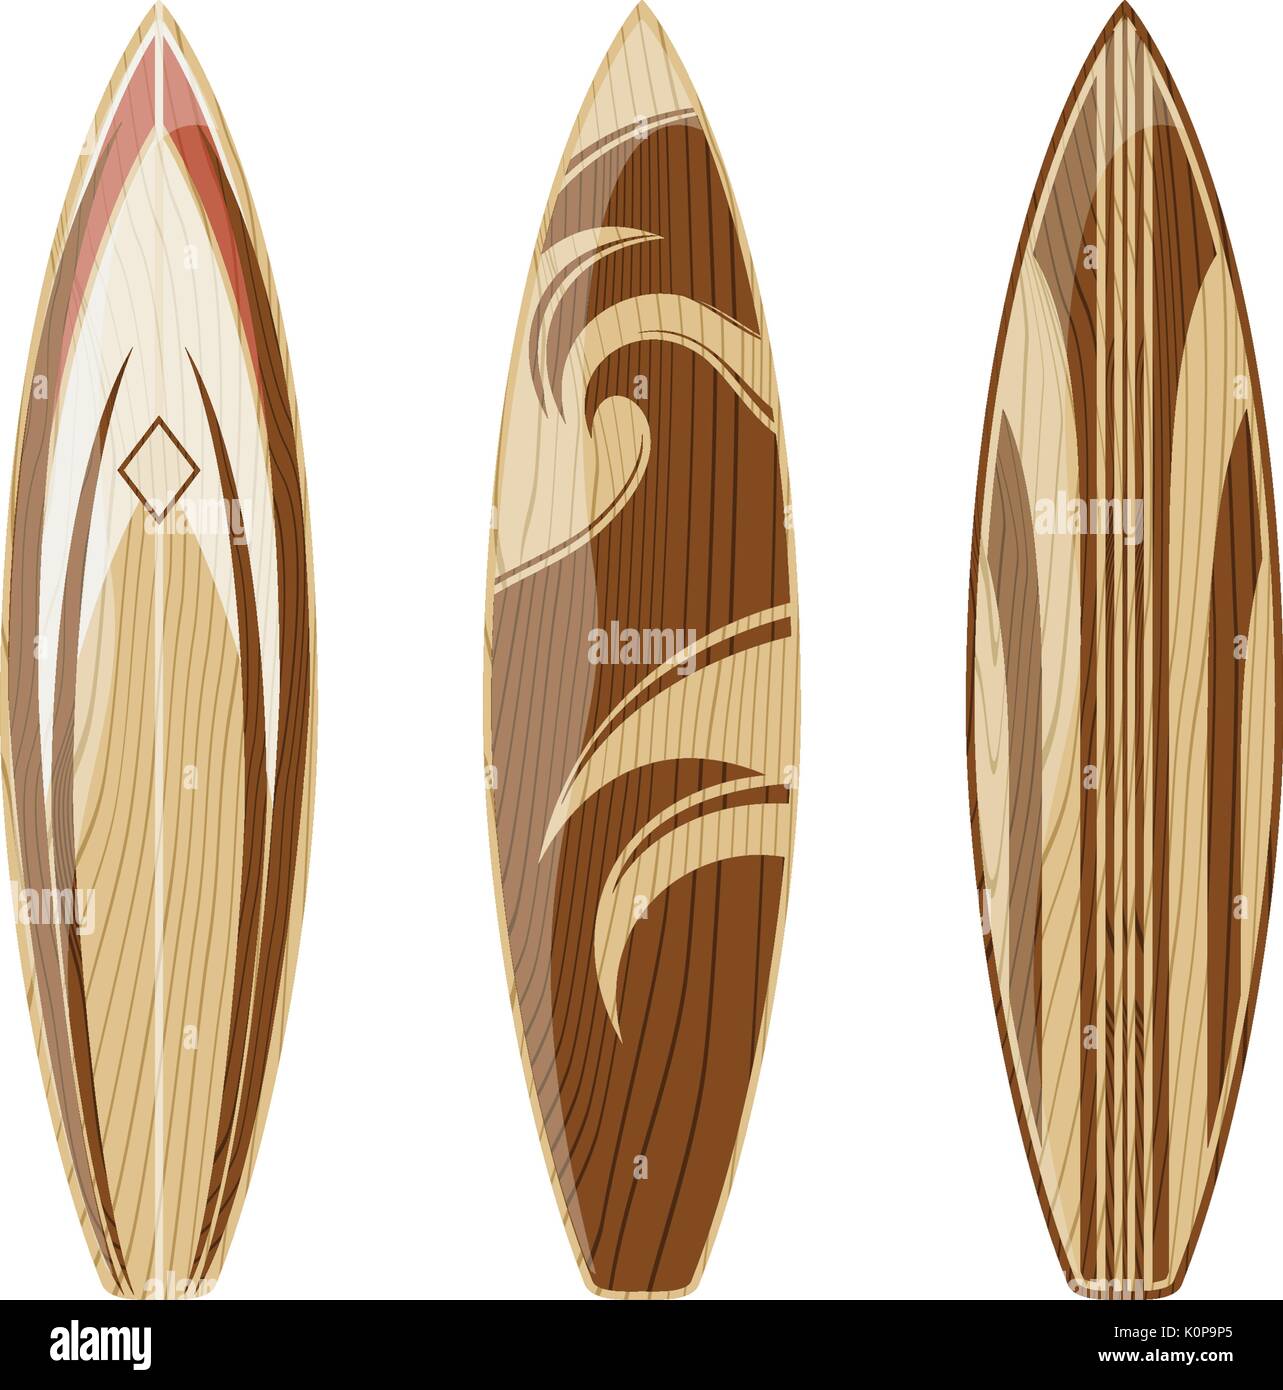 Las tablas de surf de madera aislado sobre fondo blanco, formato vectorial muy fácil de editar, sin degradados, sólo colores sólidos Ilustración del Vector